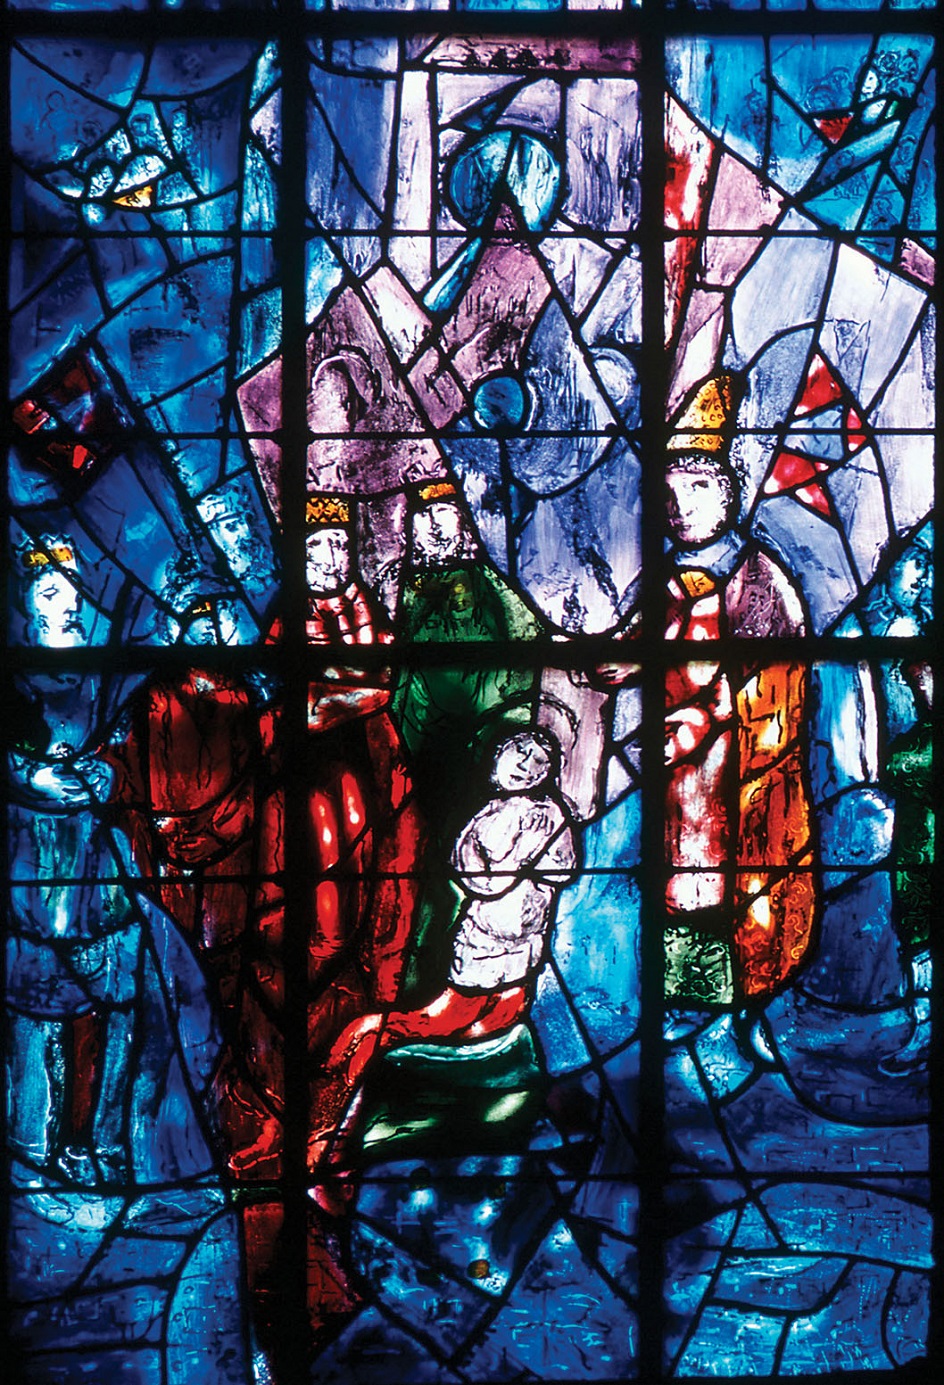 Марк Шагал. Витраж часовни Реймсского собора. Фрагмент, 1974